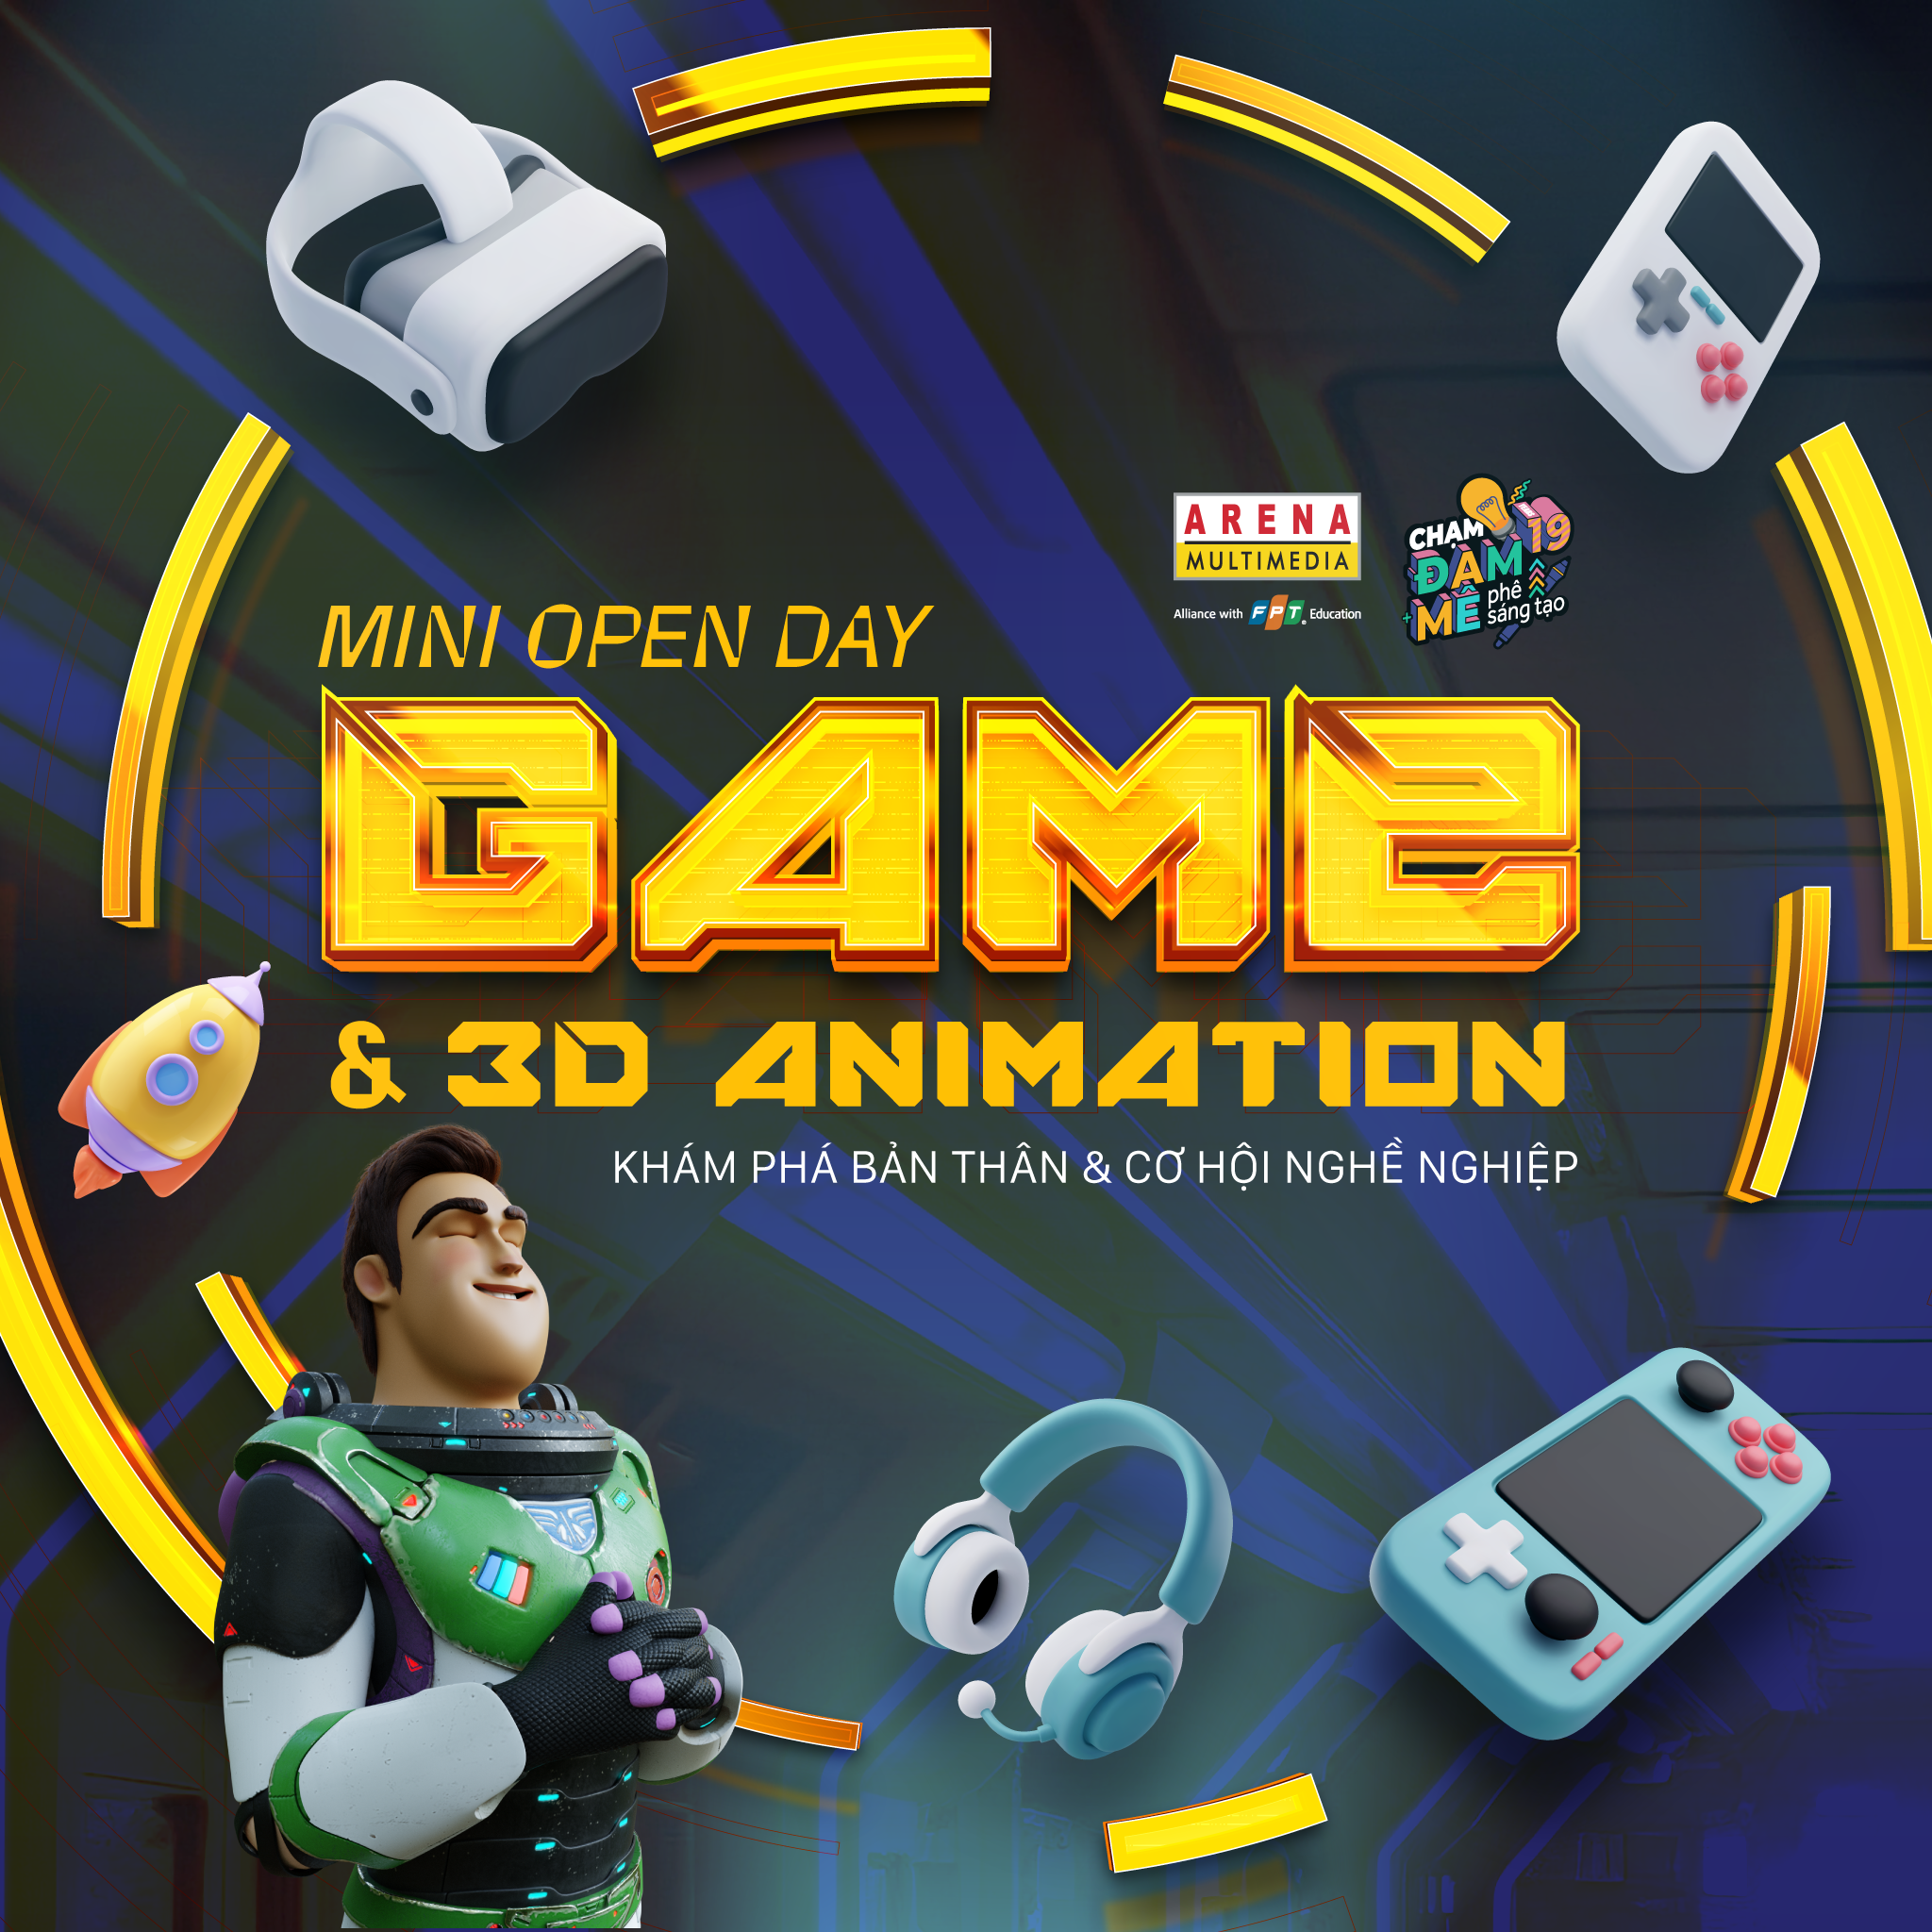 Ngày hội trải nghiệm mini open day: Khám phá bản thân qua ngành Game &3D Animation